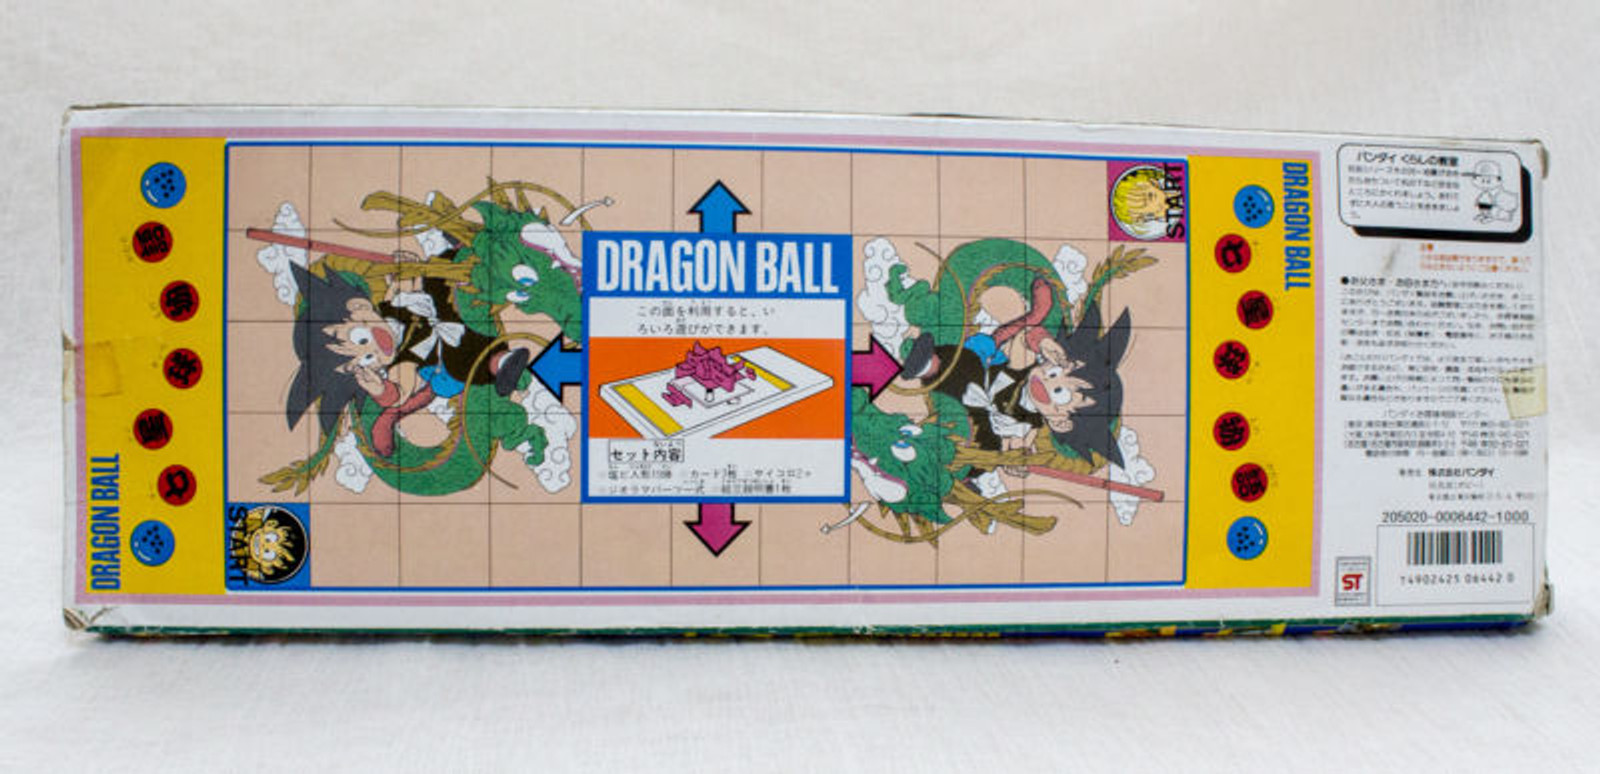 [JUNK ITEM] Dragon Ball Mini Rubber Figure Set Bandai 1986 JAPAN ANIME MANGA